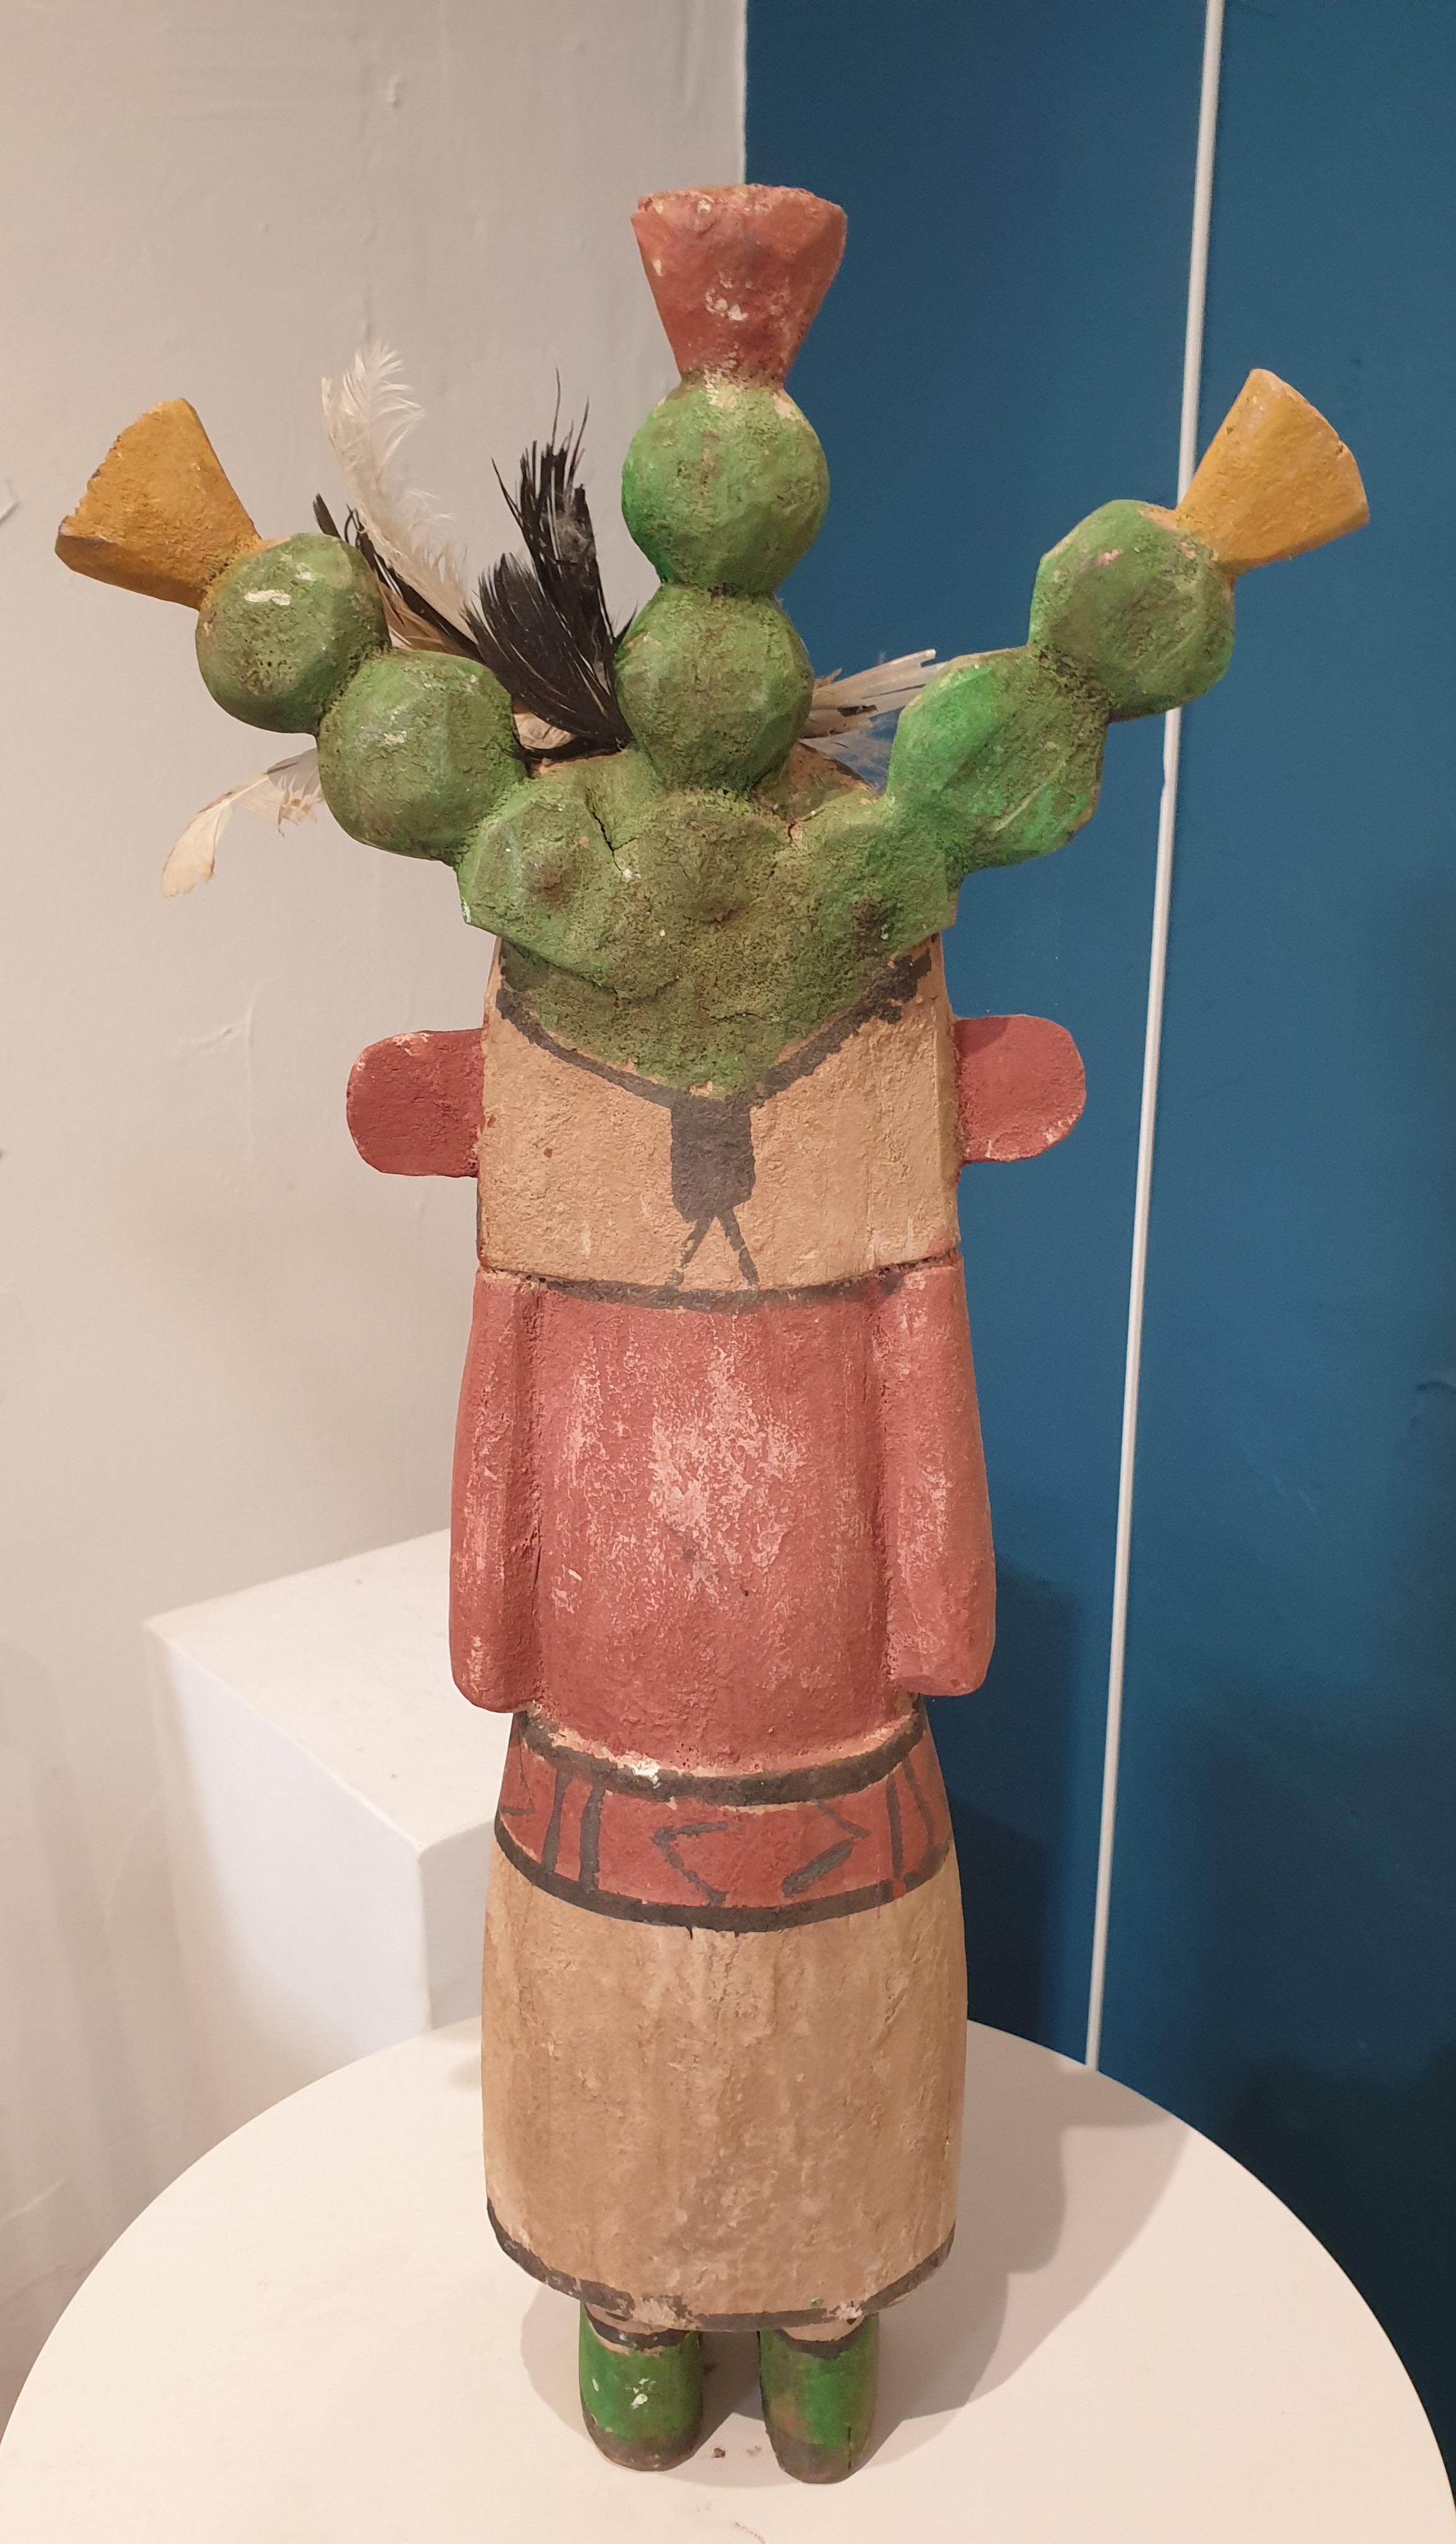 Aus Holz geschnitzte und bemalte Bildnisfigur der nordamerikanischen Ureinwohner, Hopi Katsina oder Kachina-Puppe. Eine aus einer Gruppe von acht Puppen, die alle auf 1stdibs erhältlich sind.

Hopi Katsina-Puppen sind hölzerne Abbilder der Katsinam